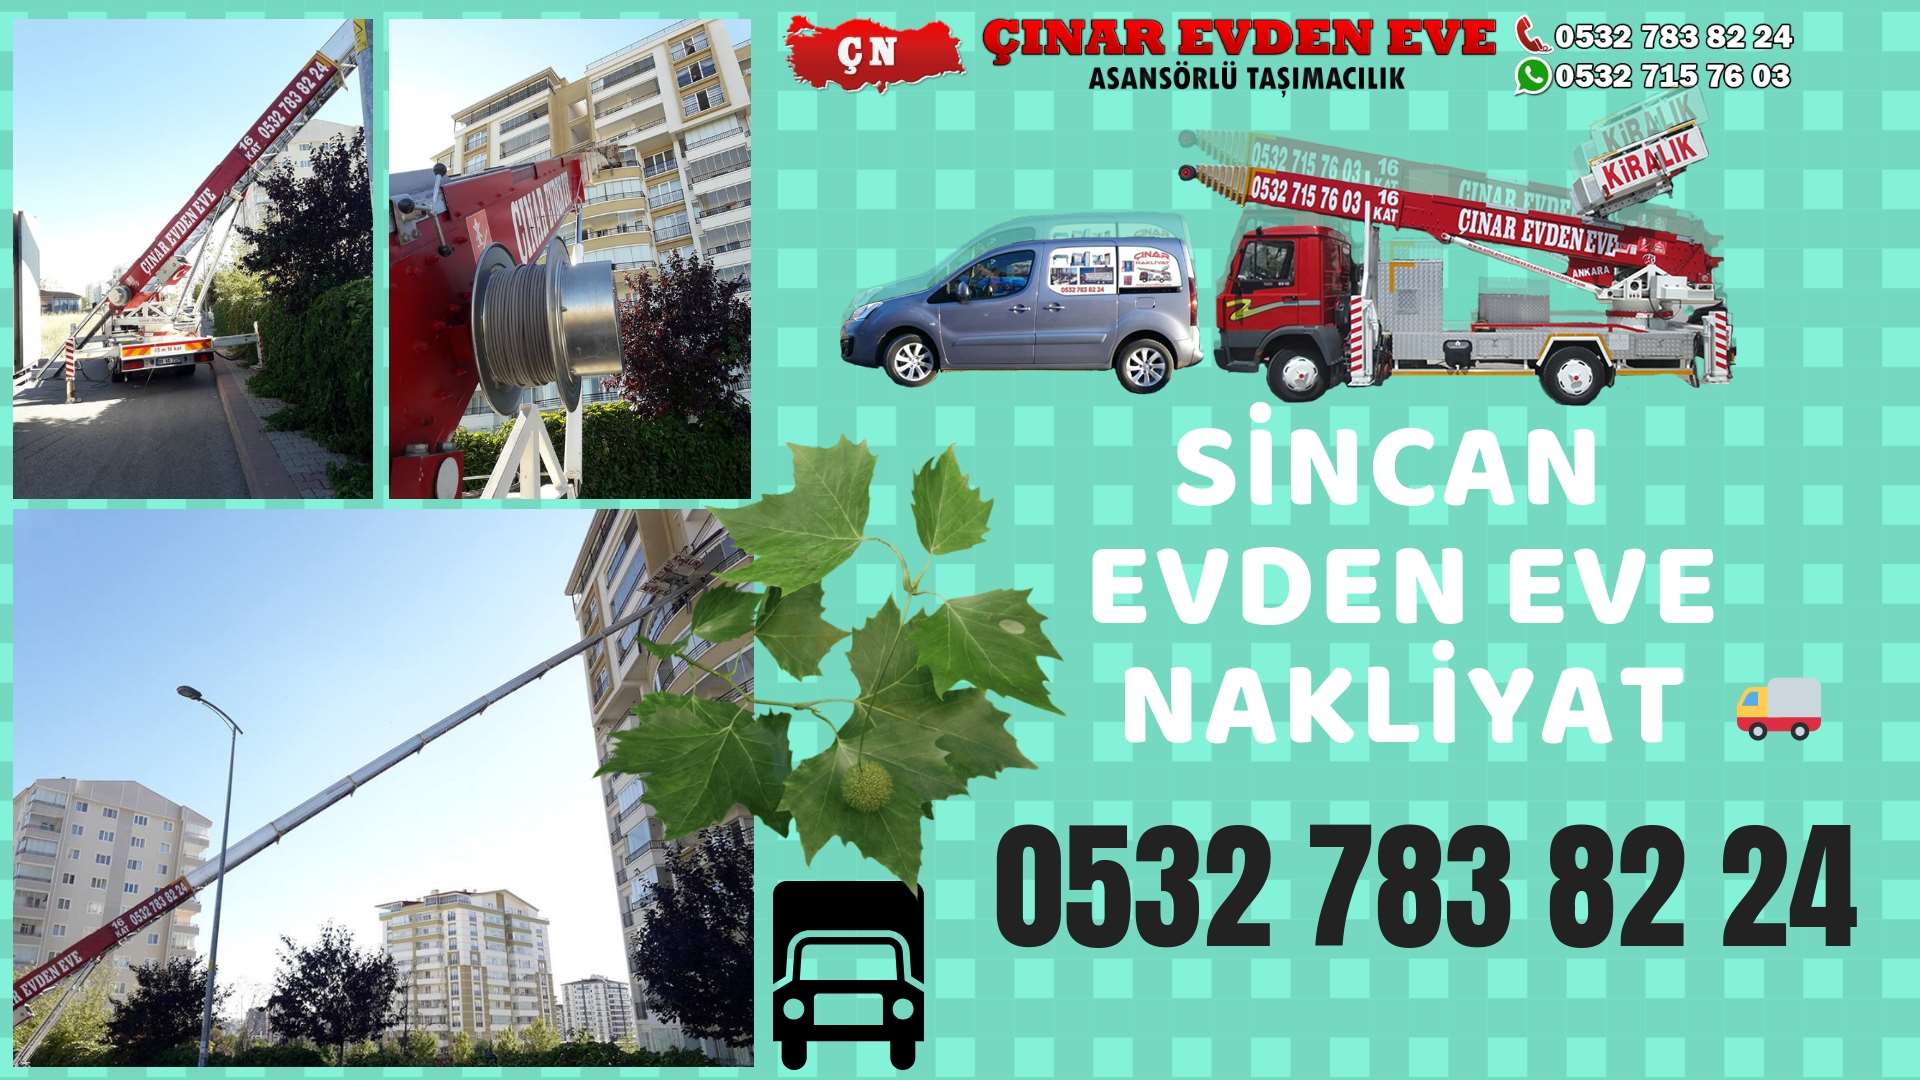 Ankara İvedik sincan ev eşya taşımacılığı, sincan evden eve 0532 715 76 03